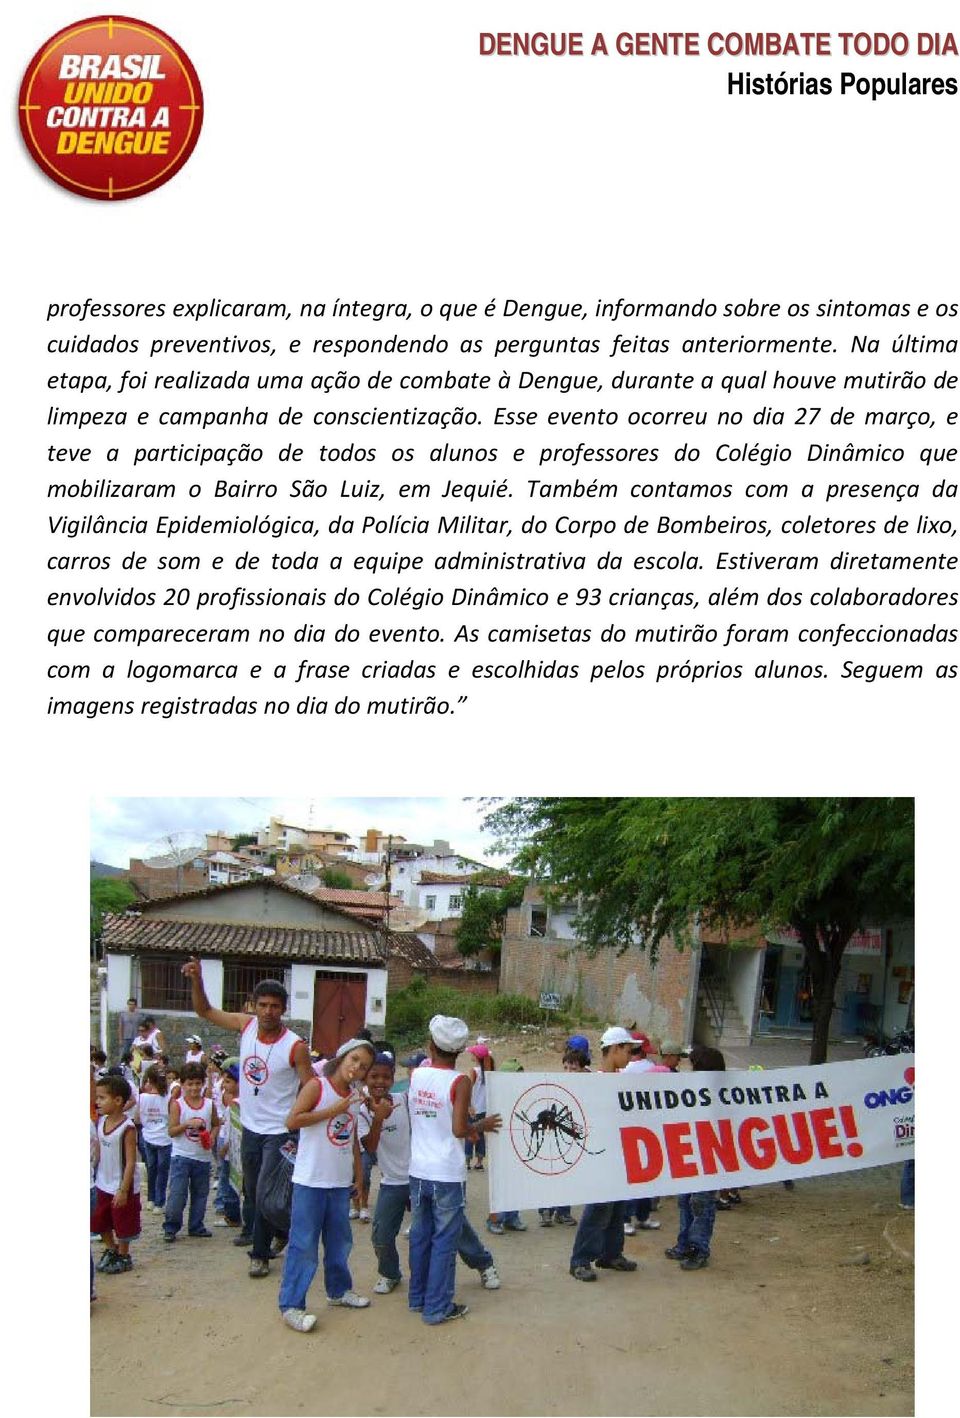 Esse evento ocorreu no dia 27 de março, e teve a participação de todos os alunos e professores do Colégio Dinâmico que mobilizaram o Bairro São Luiz, em Jequié.